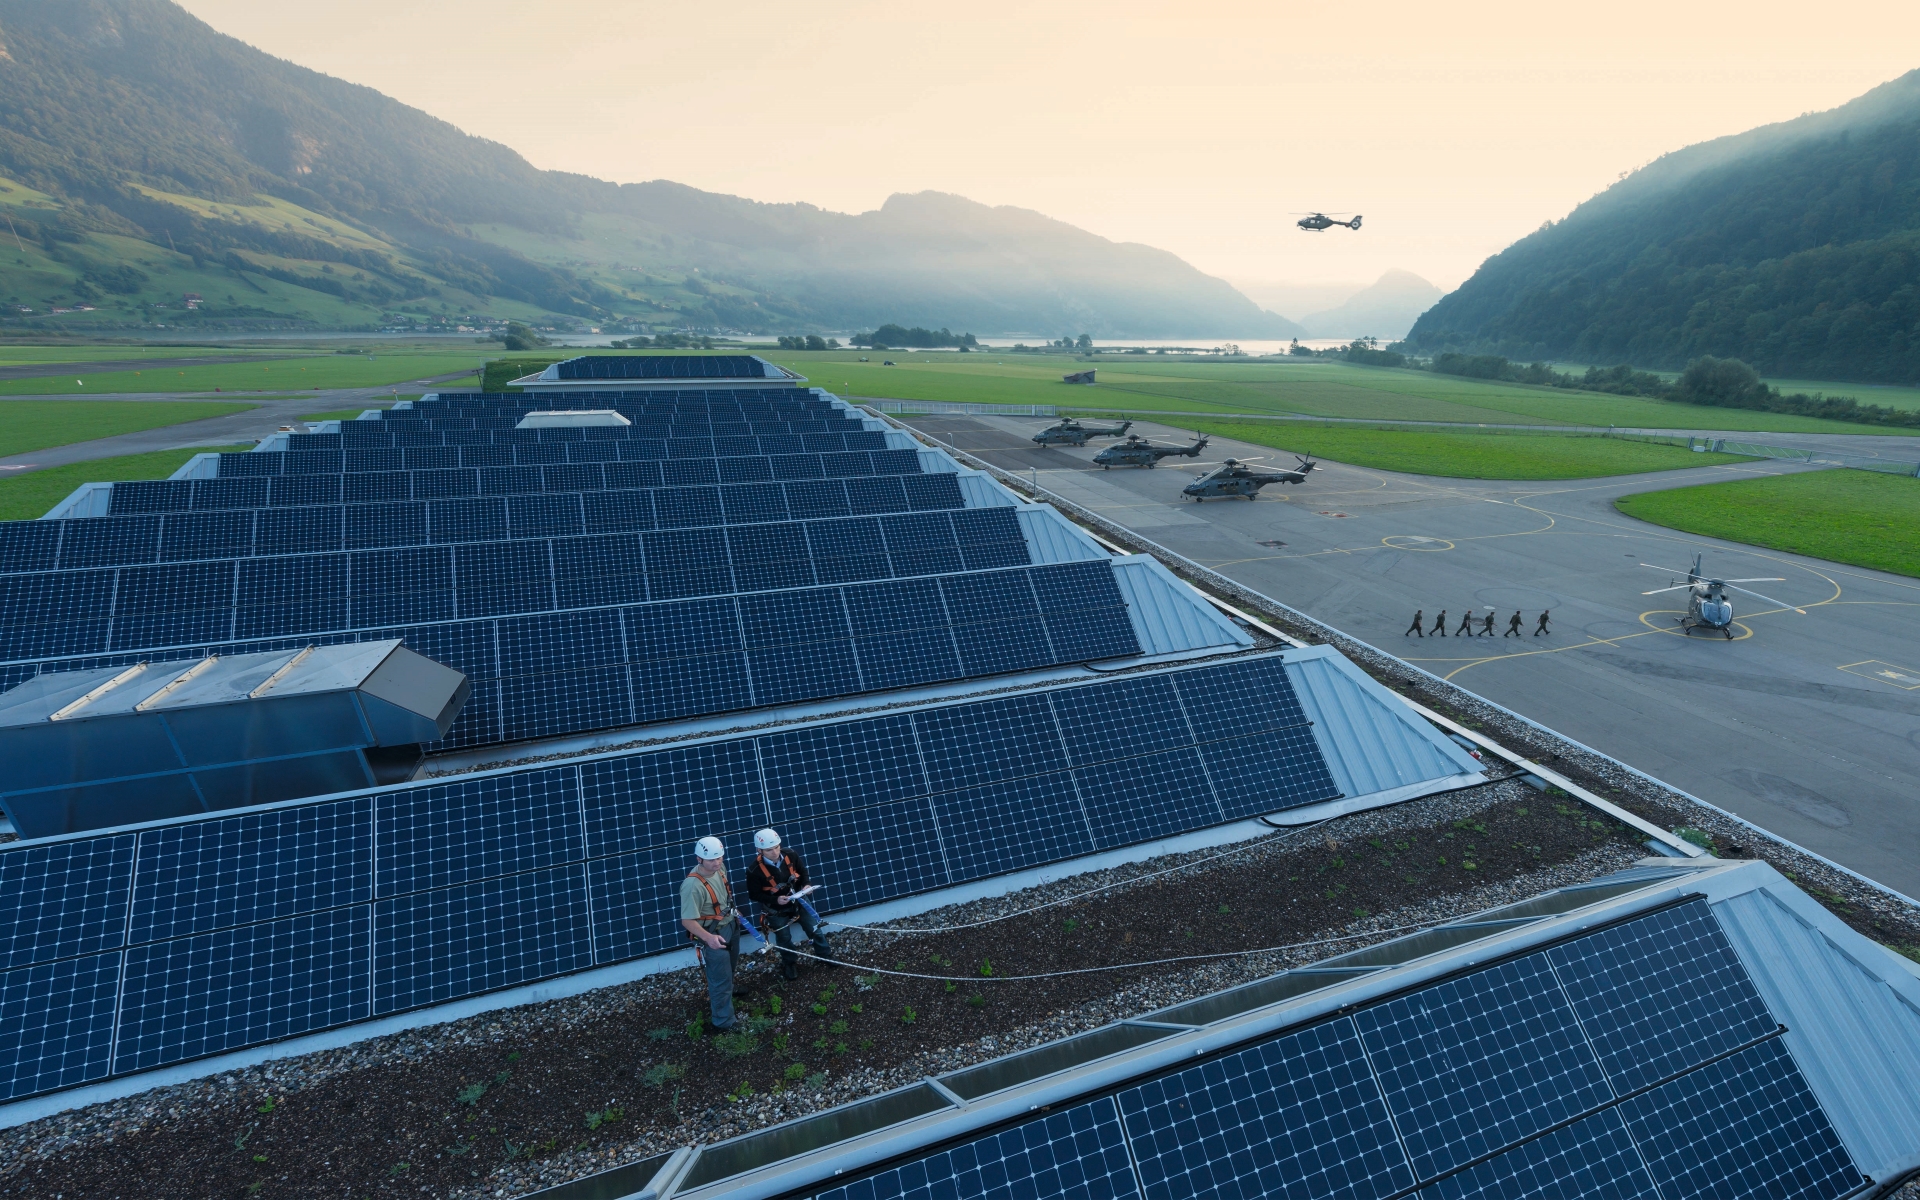 Dach mit Solarzellen auf einem Militärflugplatz.